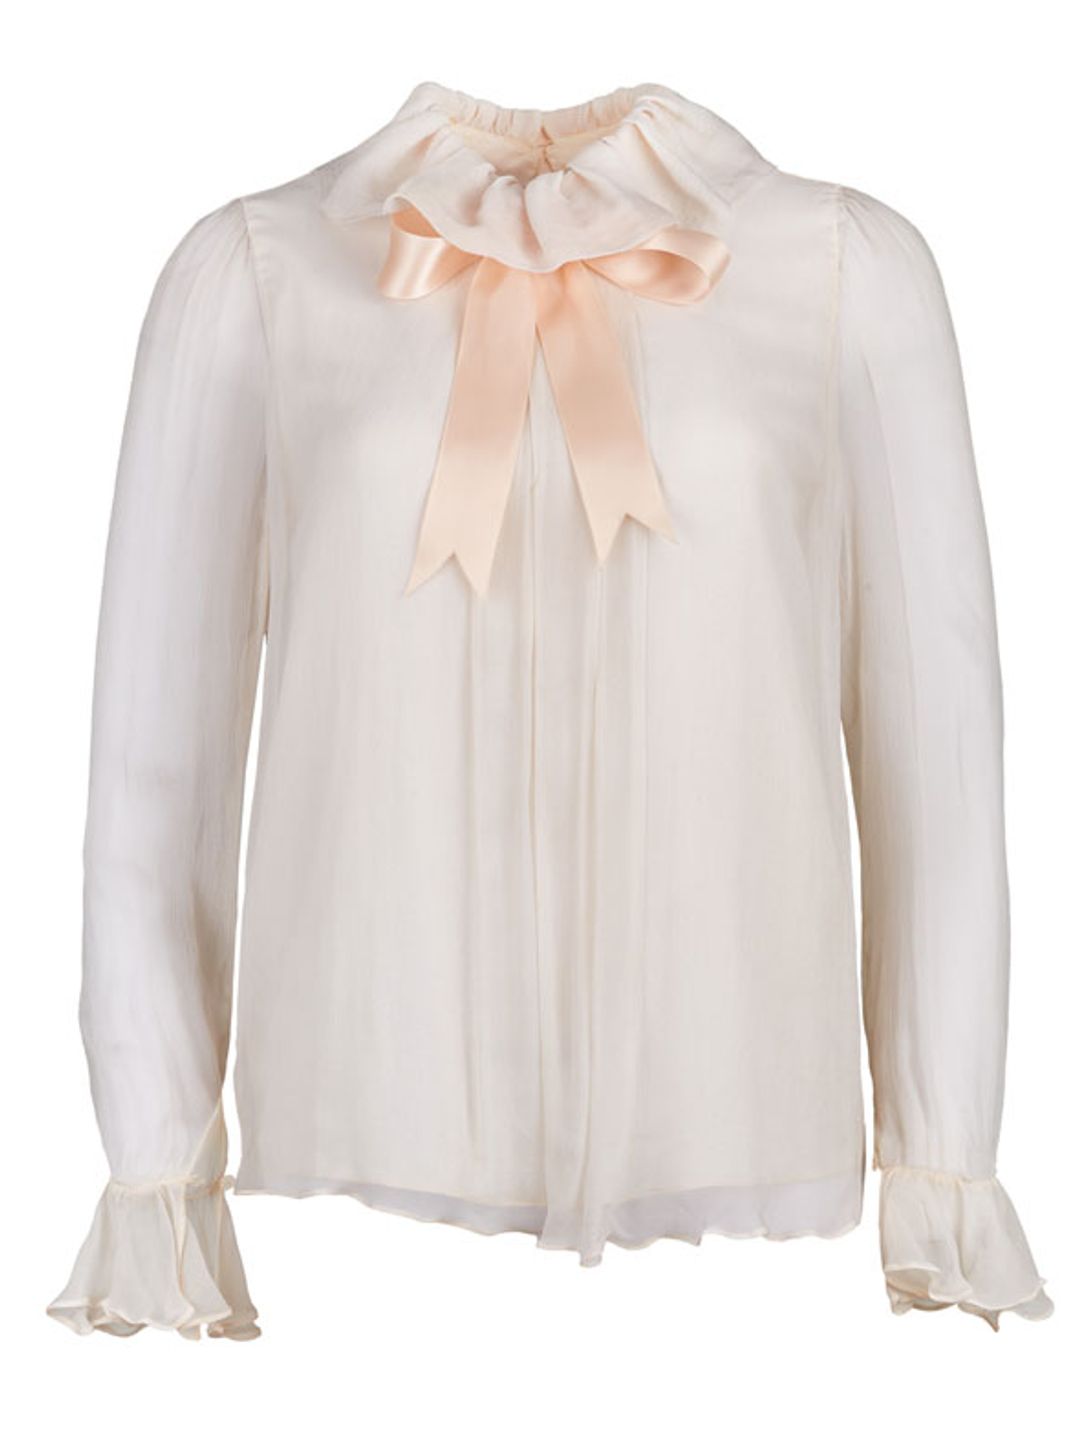 Blush pink chiffon blouse - Emanuels